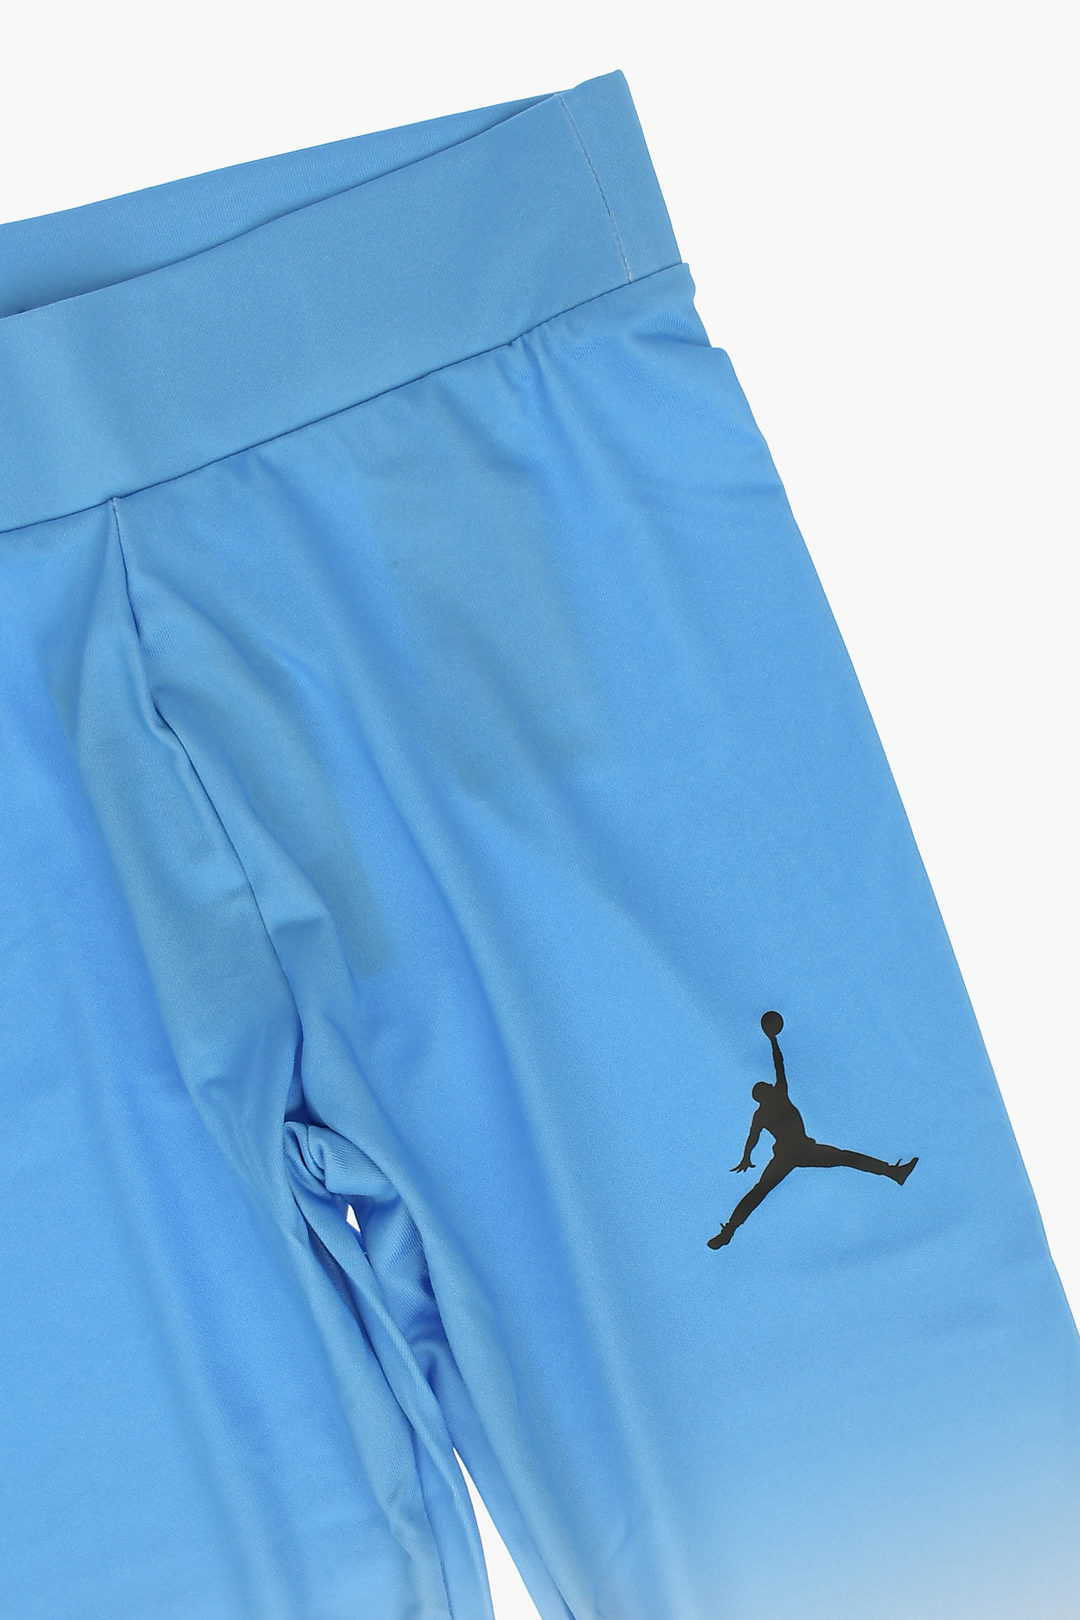 Nike KIDS AIR JORDAN Contarsting Logo Print Solid Color Leggings